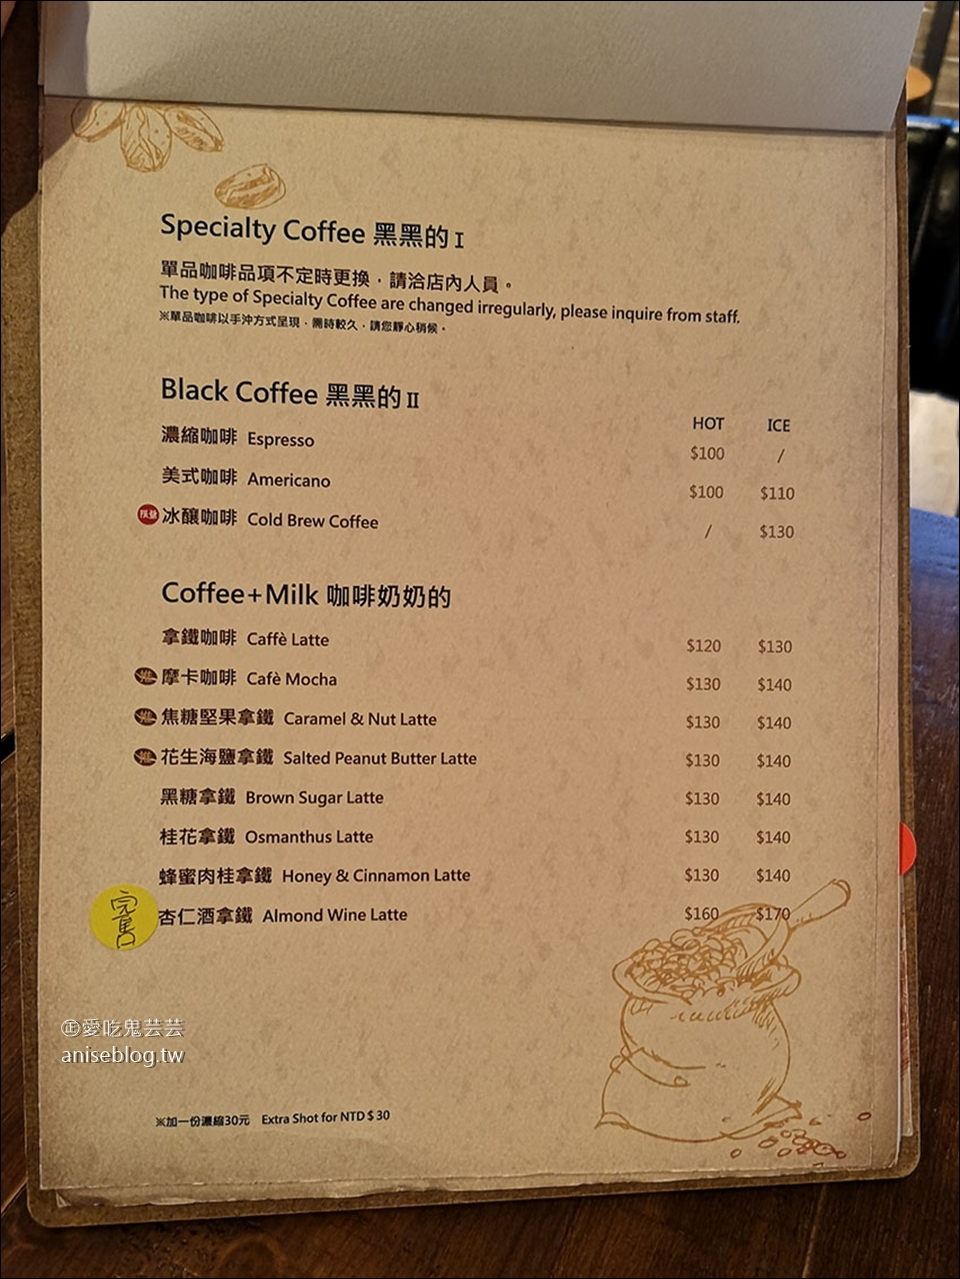 東旅 O.L.O CAFÉ，南京三民站咖啡廳 (文末菜單)，不限時、可插電